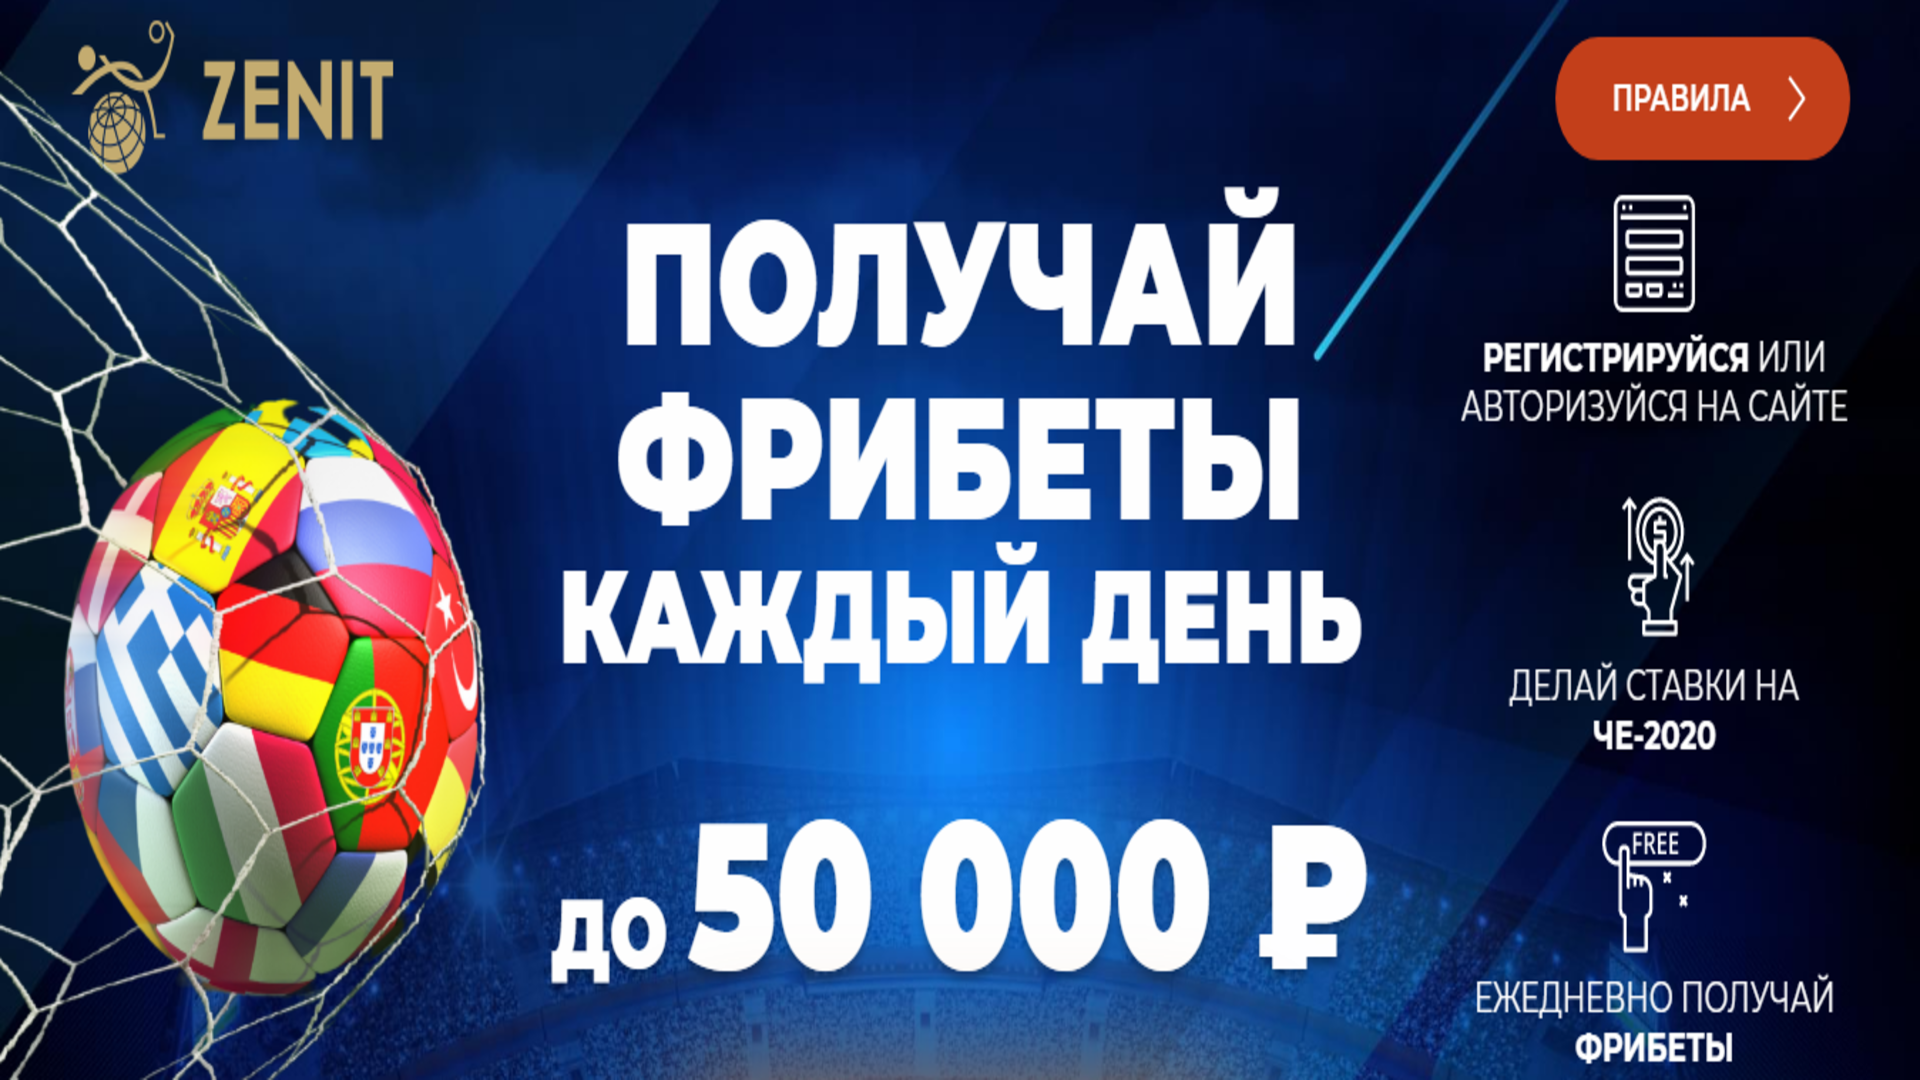 «Зенит» предлагает до 50000 рублей фрибета за ставки на Евро-2020